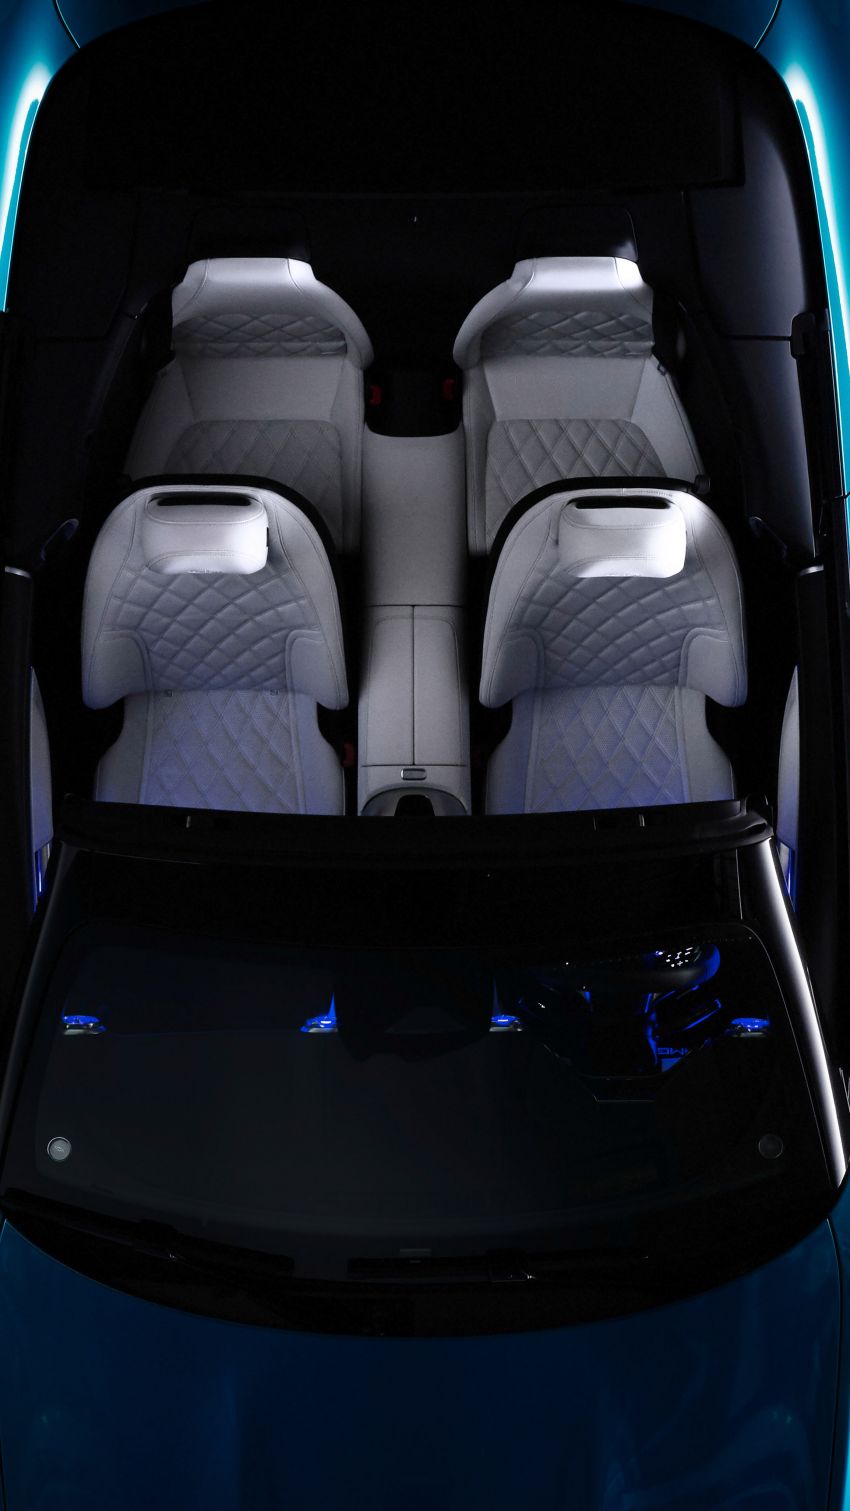 2022 R232 Mercedes-AMG SL interior gets revealed Image #1318896